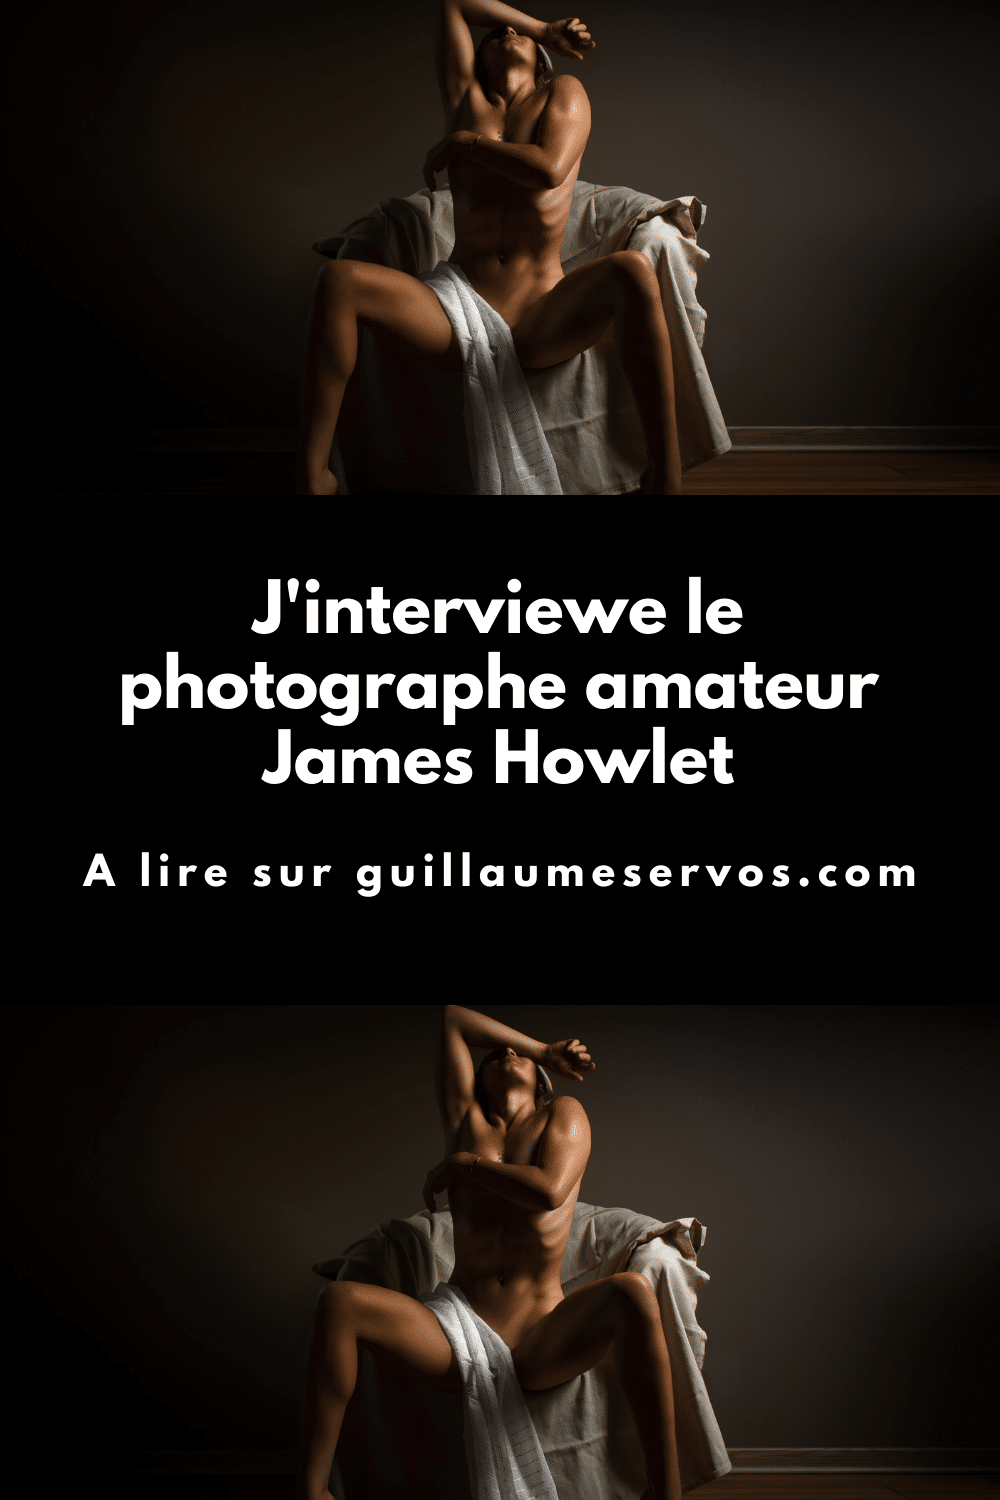 Découvre mon interview avec James Howlet, photographe amateur spécialisé dans la lingerie et dans le charme. Son rapport à la photographie, aux réseaux sociaux et au voyage.